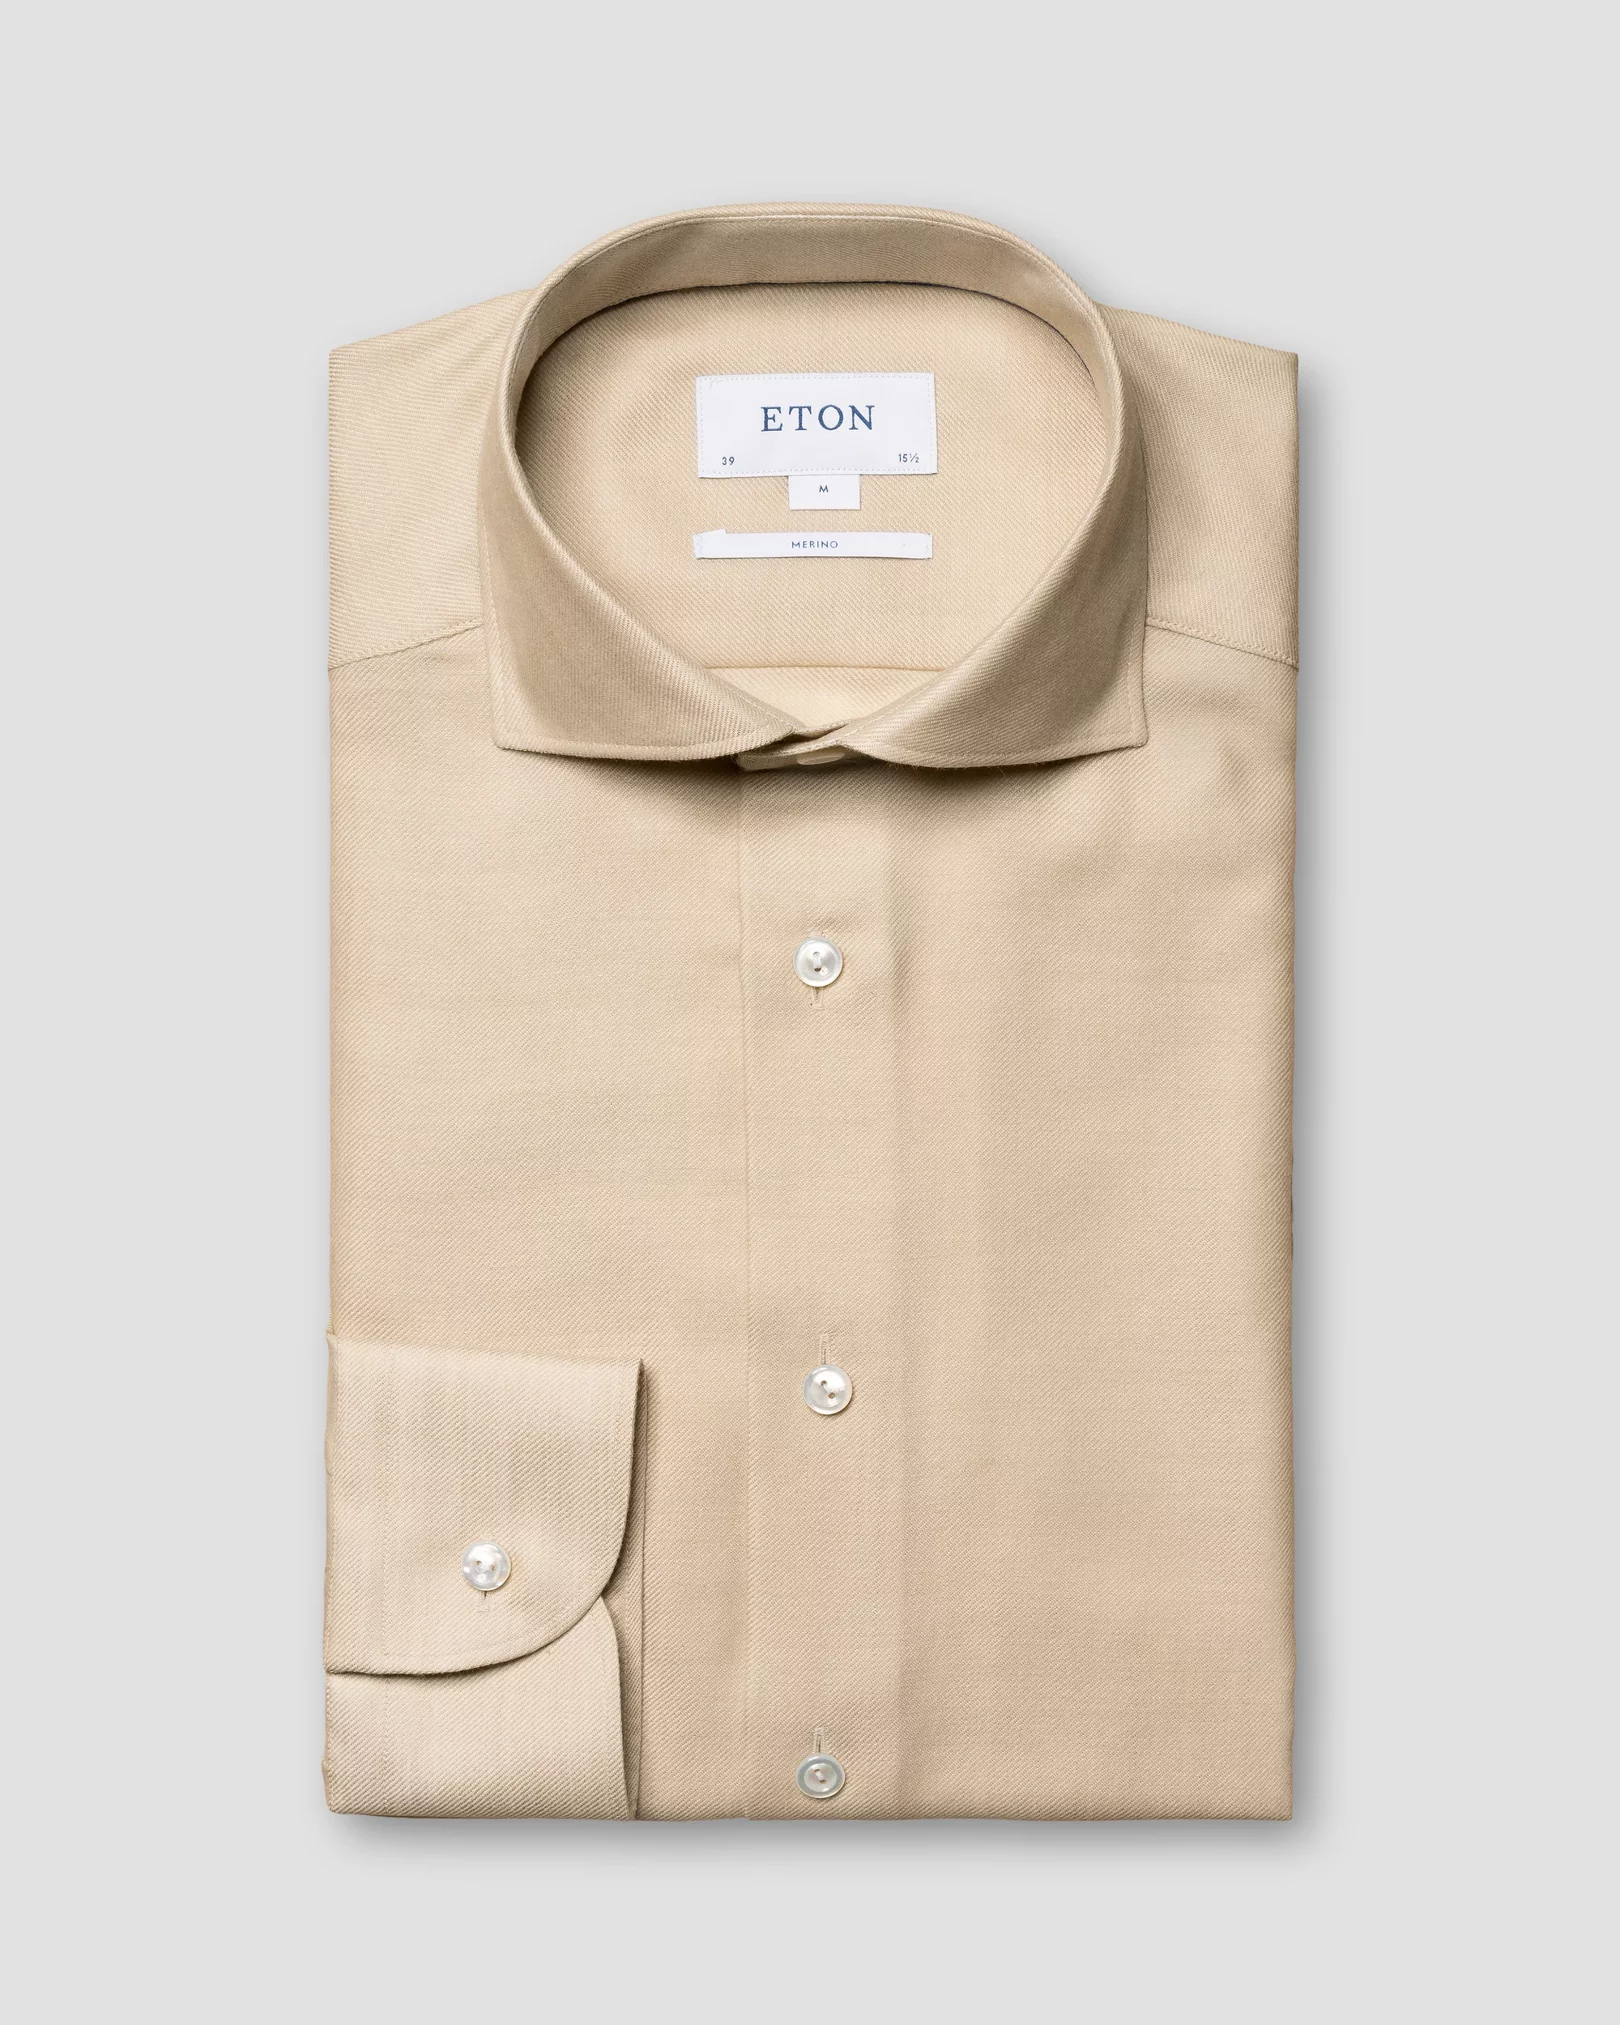 Eton - beige merino shirt